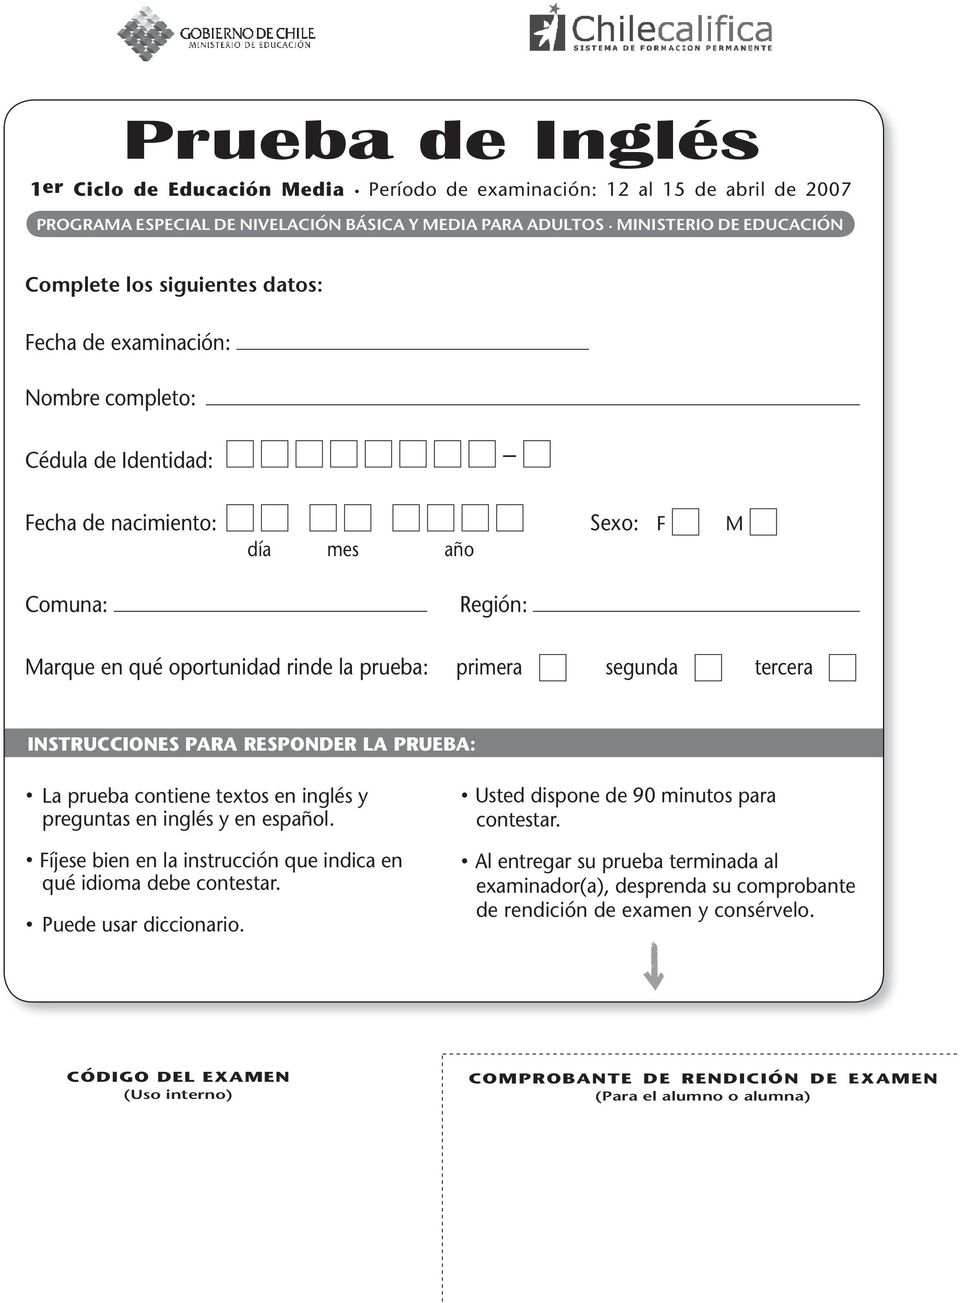 rinde la prueba: primera segunda tercera Instrucciones para responder la prueba:. La prueba contiene textos en inglés y preguntas en inglés y en español.